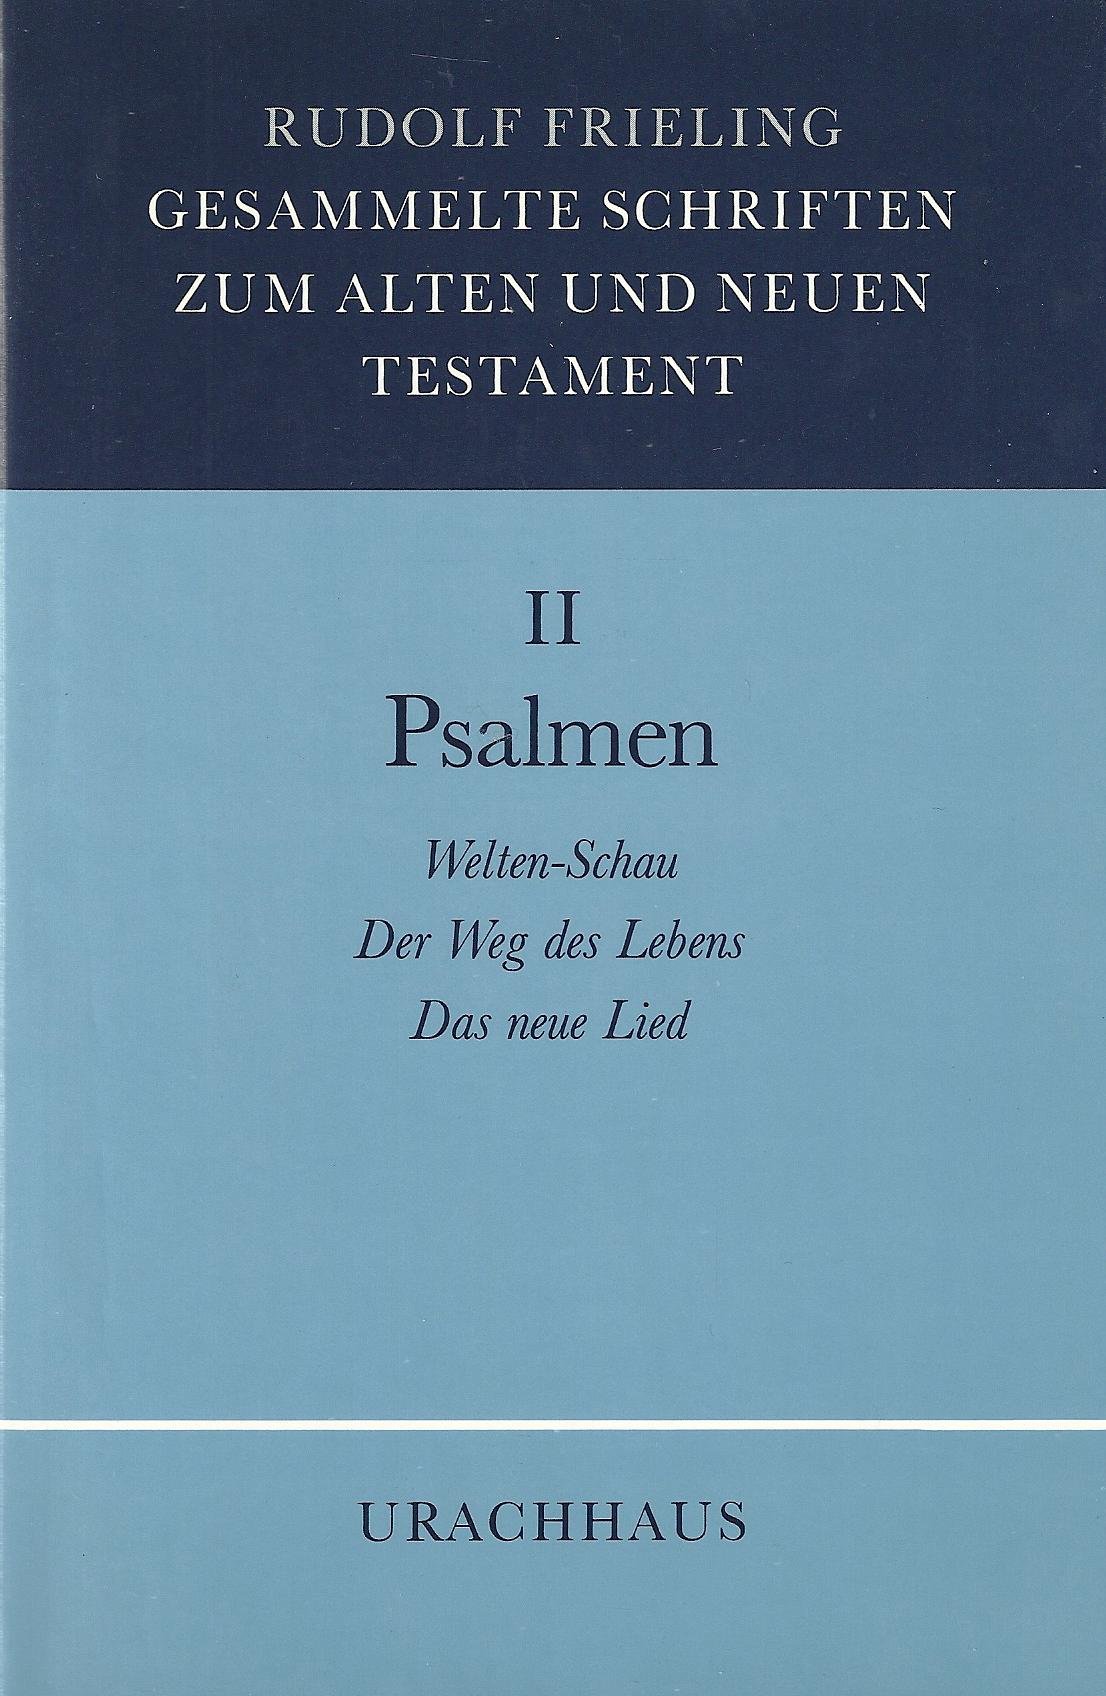 Gesammelte Schriften zum Alten und Neuen Testament, Bd.2: Psalmen: Weltenschau. Der Weg des Lebens. Das neue Lied. - Frieling, Rudolf